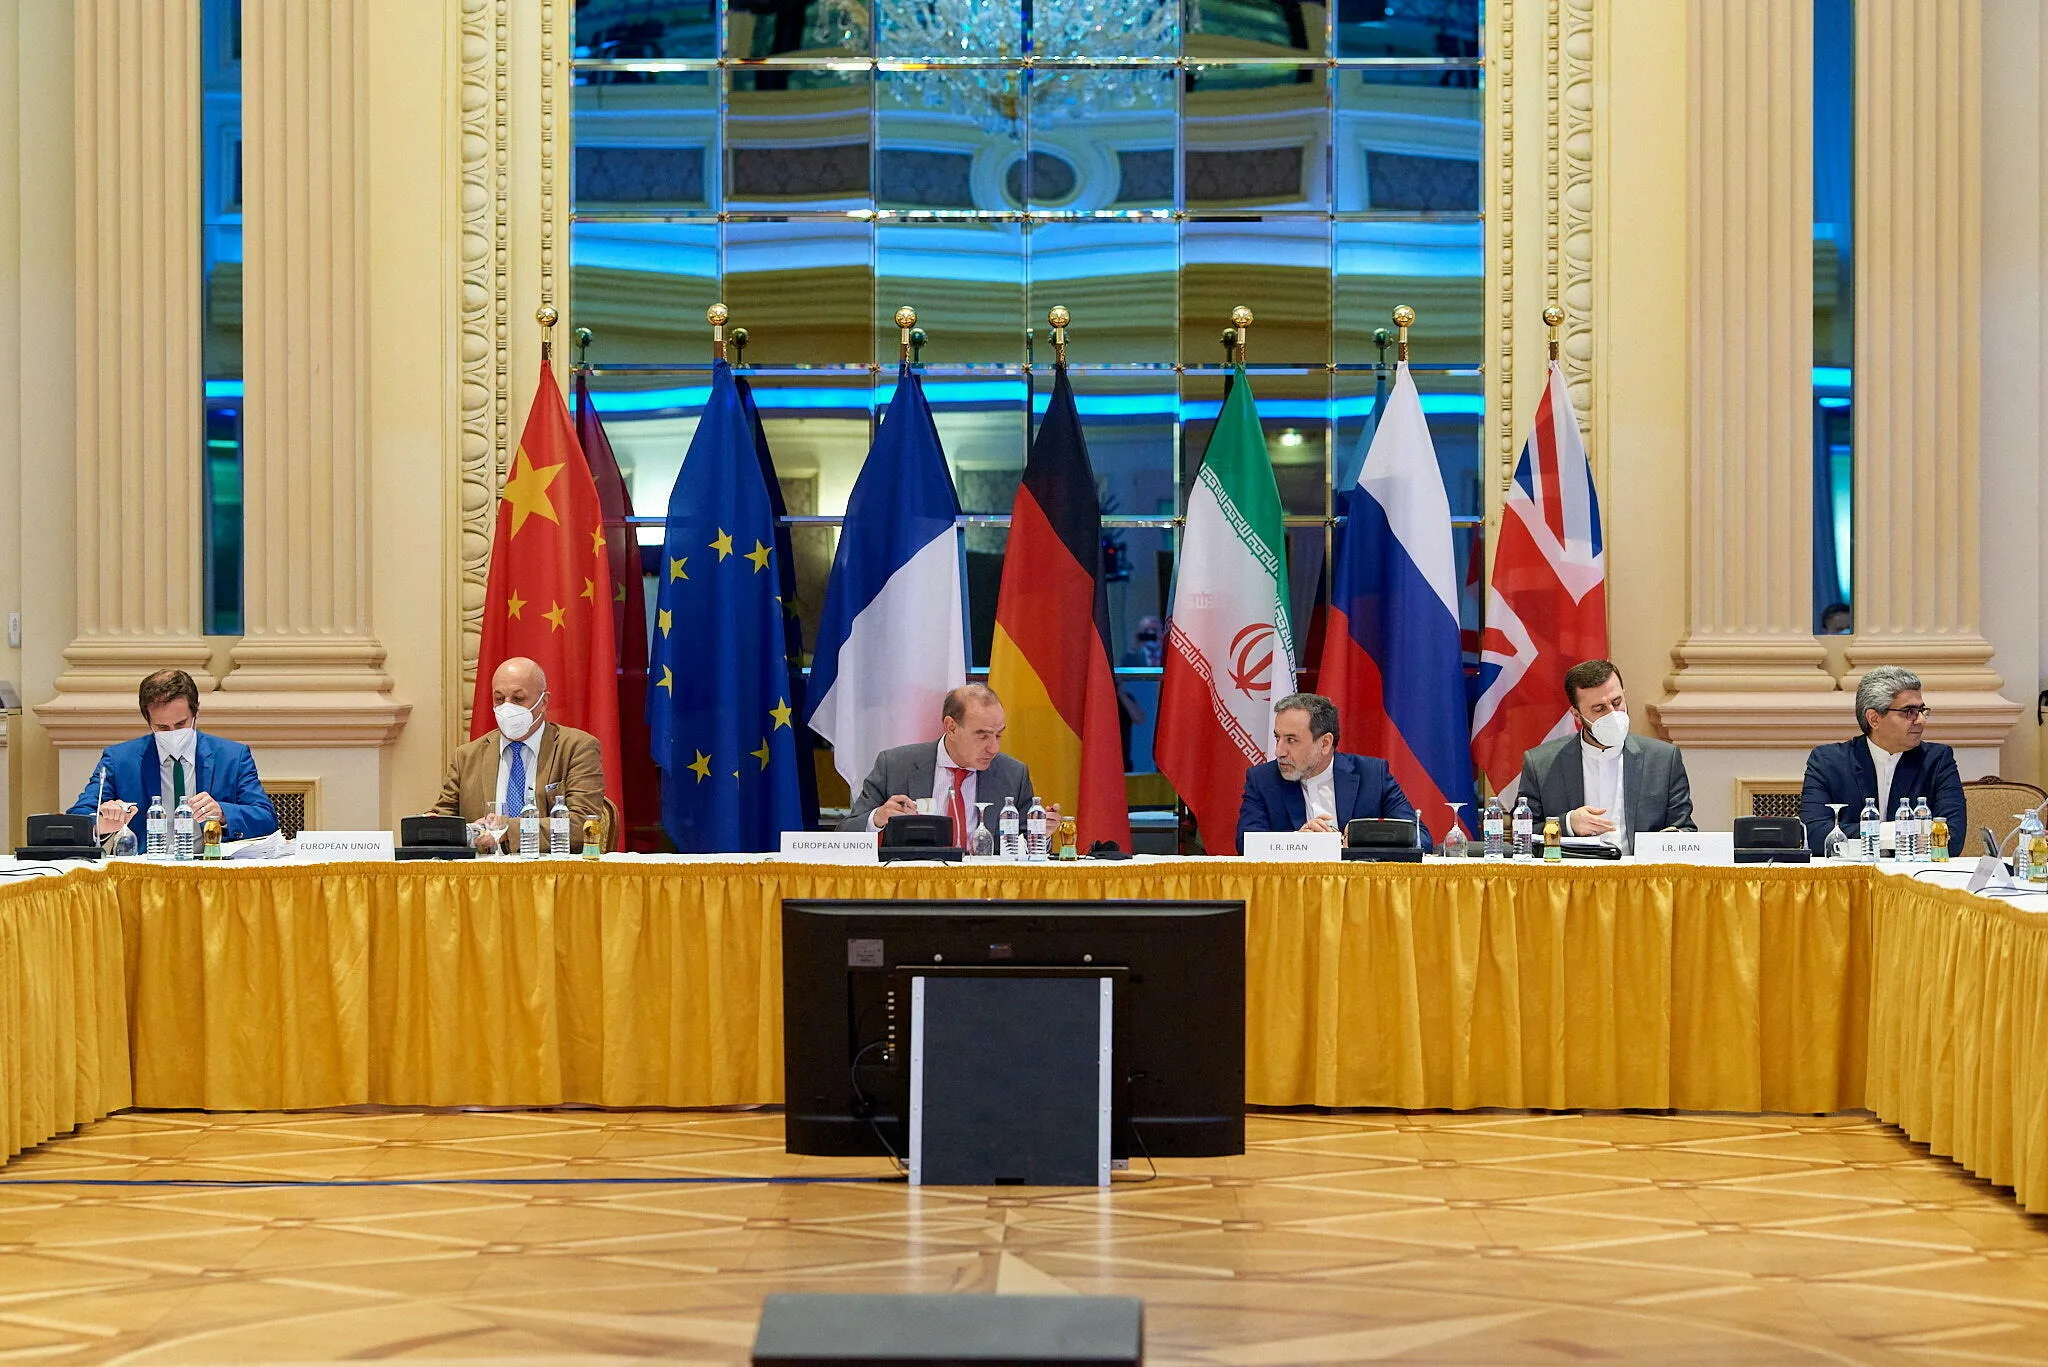 جولة جديدة من المحادثات بشأن إحياء الاتفاق النووي الإيراني في فيينا